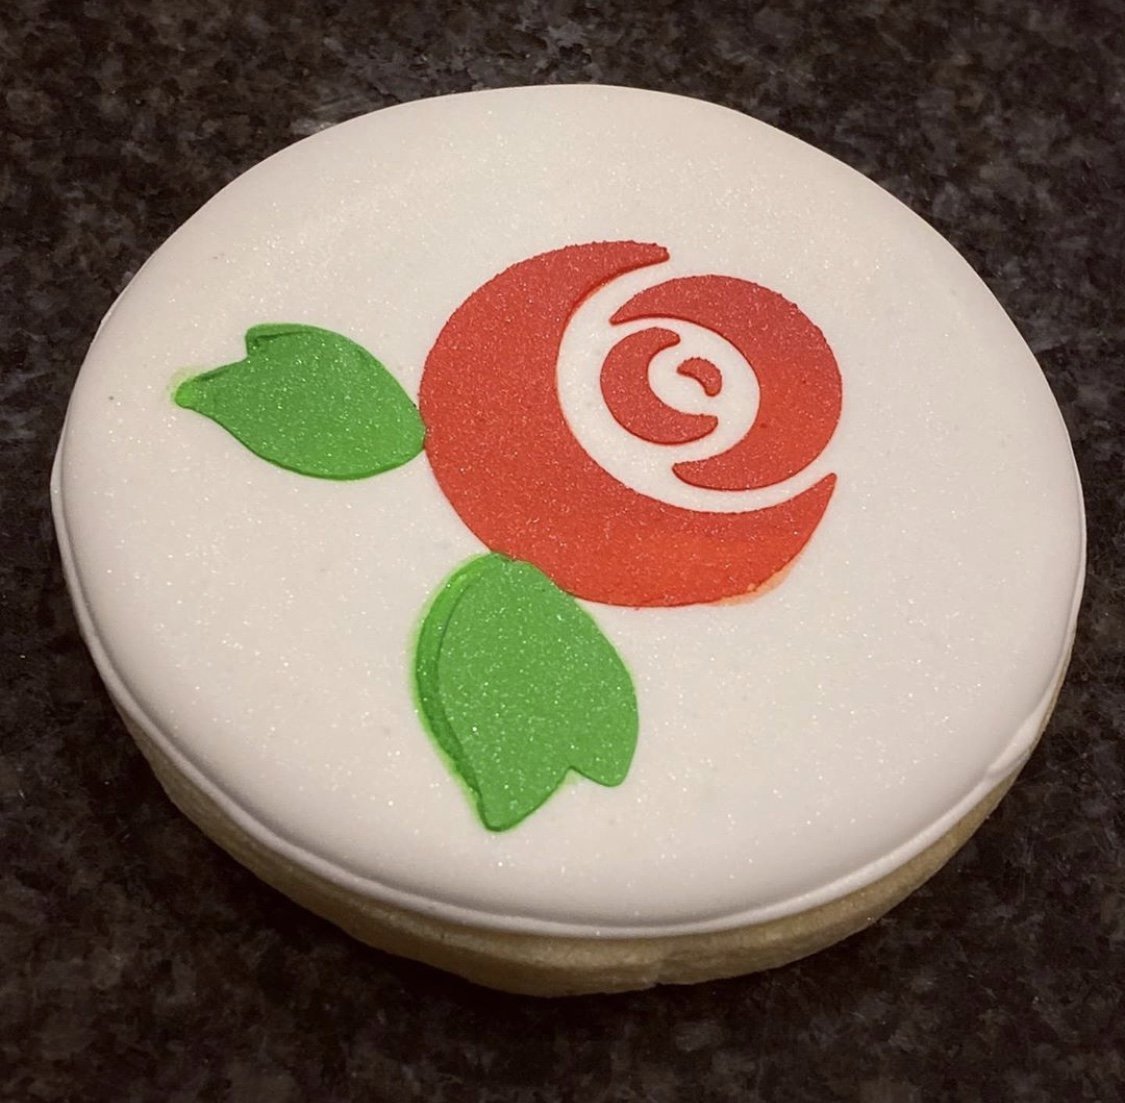 Rose Flower Cookie Stencil bakeartstencil